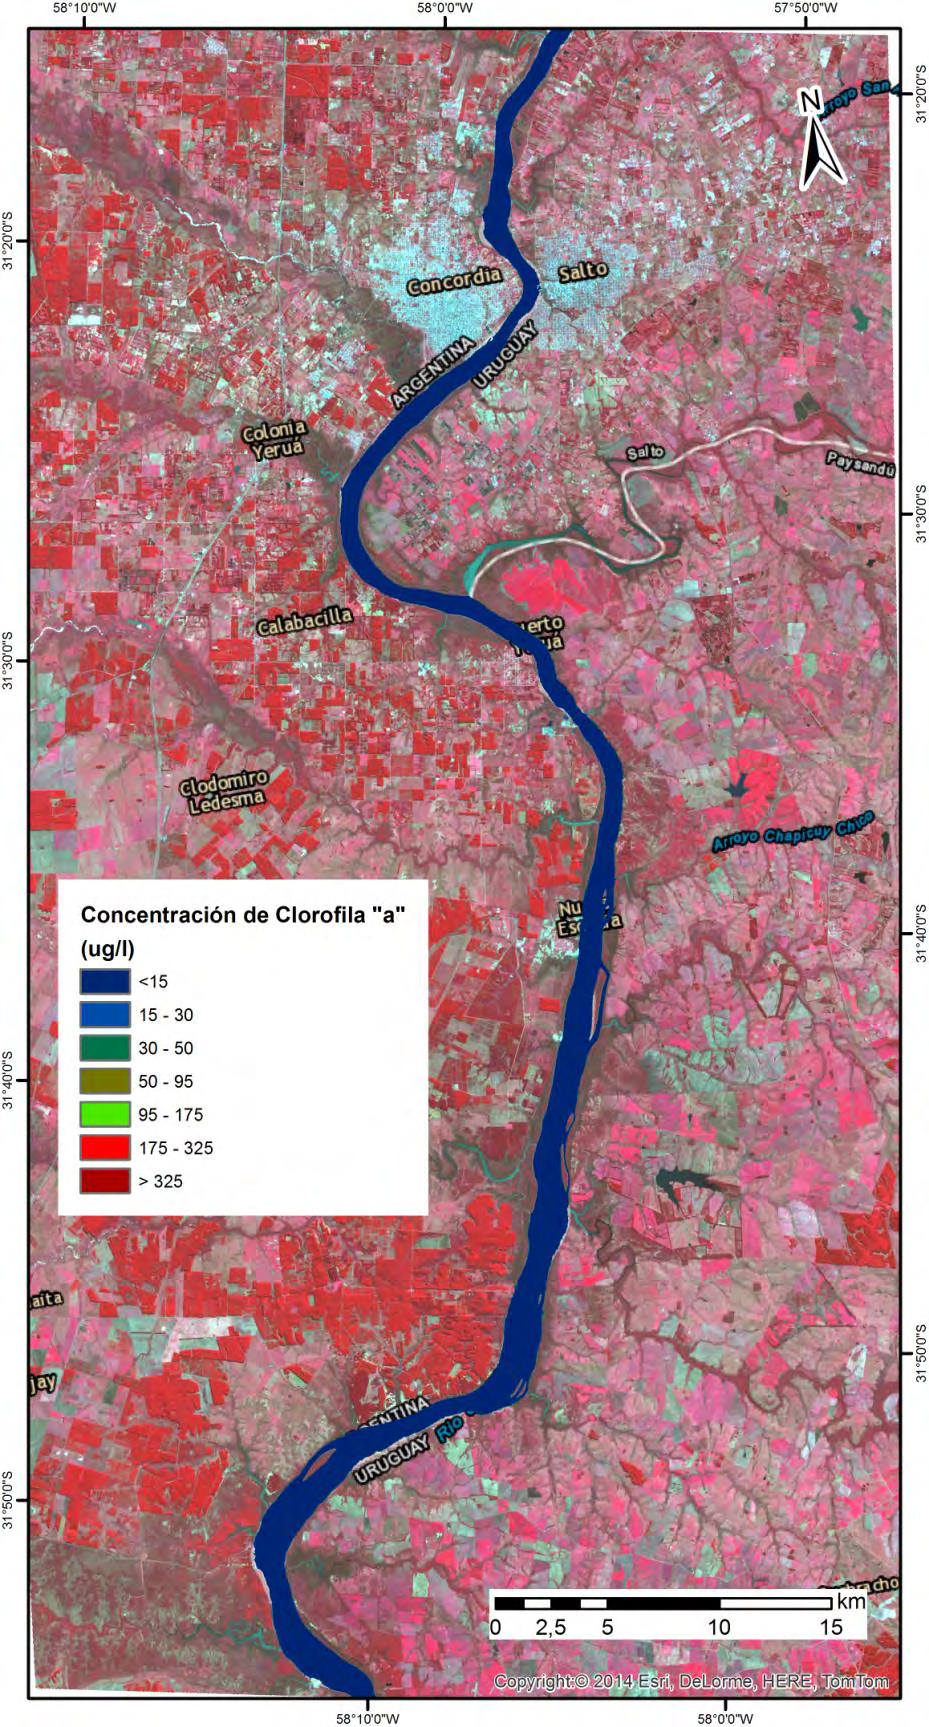 Concentración de Clorofila a de las aguas del Río Uruguay obtenida a partir de la imagen Landsat 8 OLI del